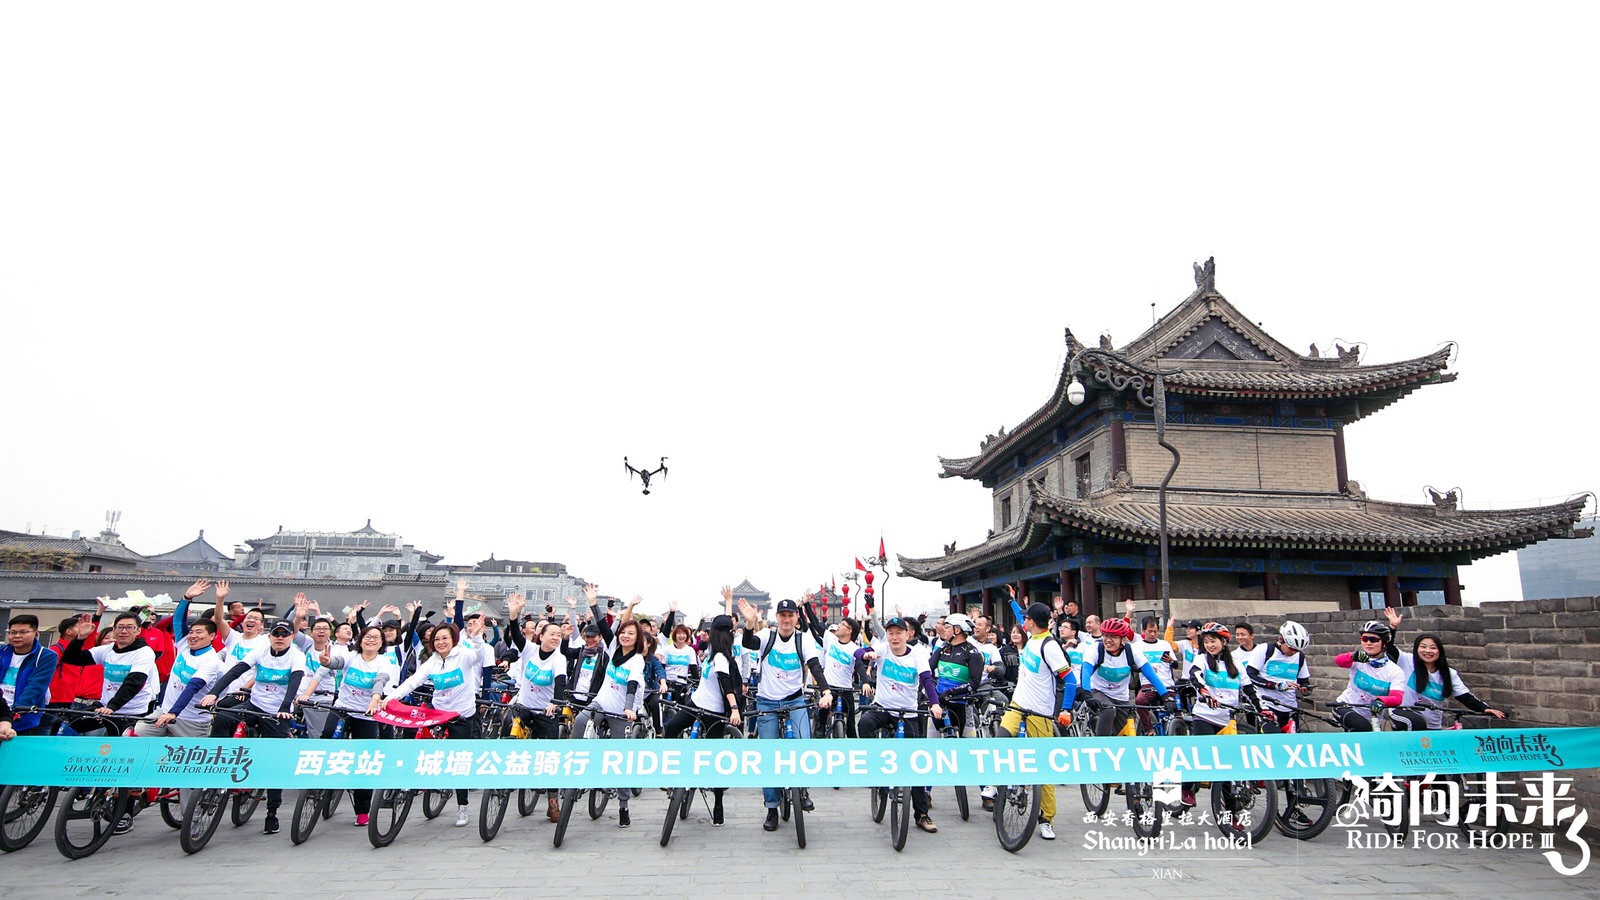 成都香格里拉大酒店举办“骑向未来3”公益骑行活动-中国网地产